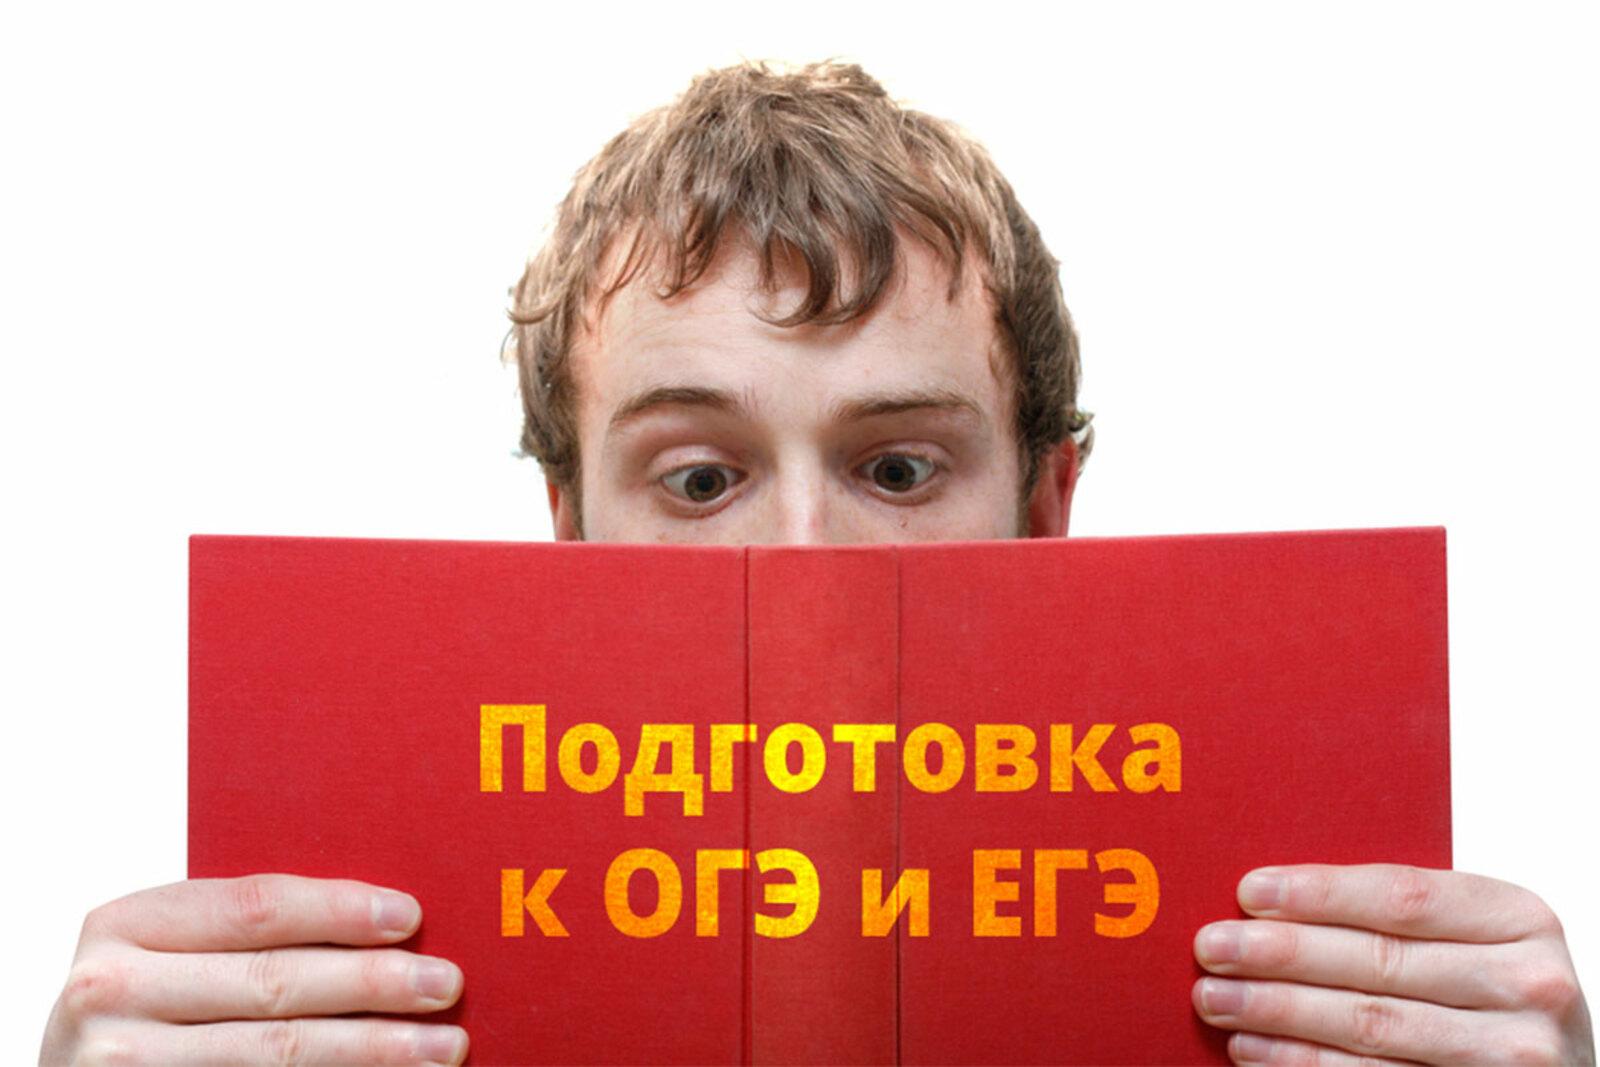 В Башкортостане стартовала серия бесплатных онлайн-консультаций для подготовки к ЕГЭ и ОГЭ